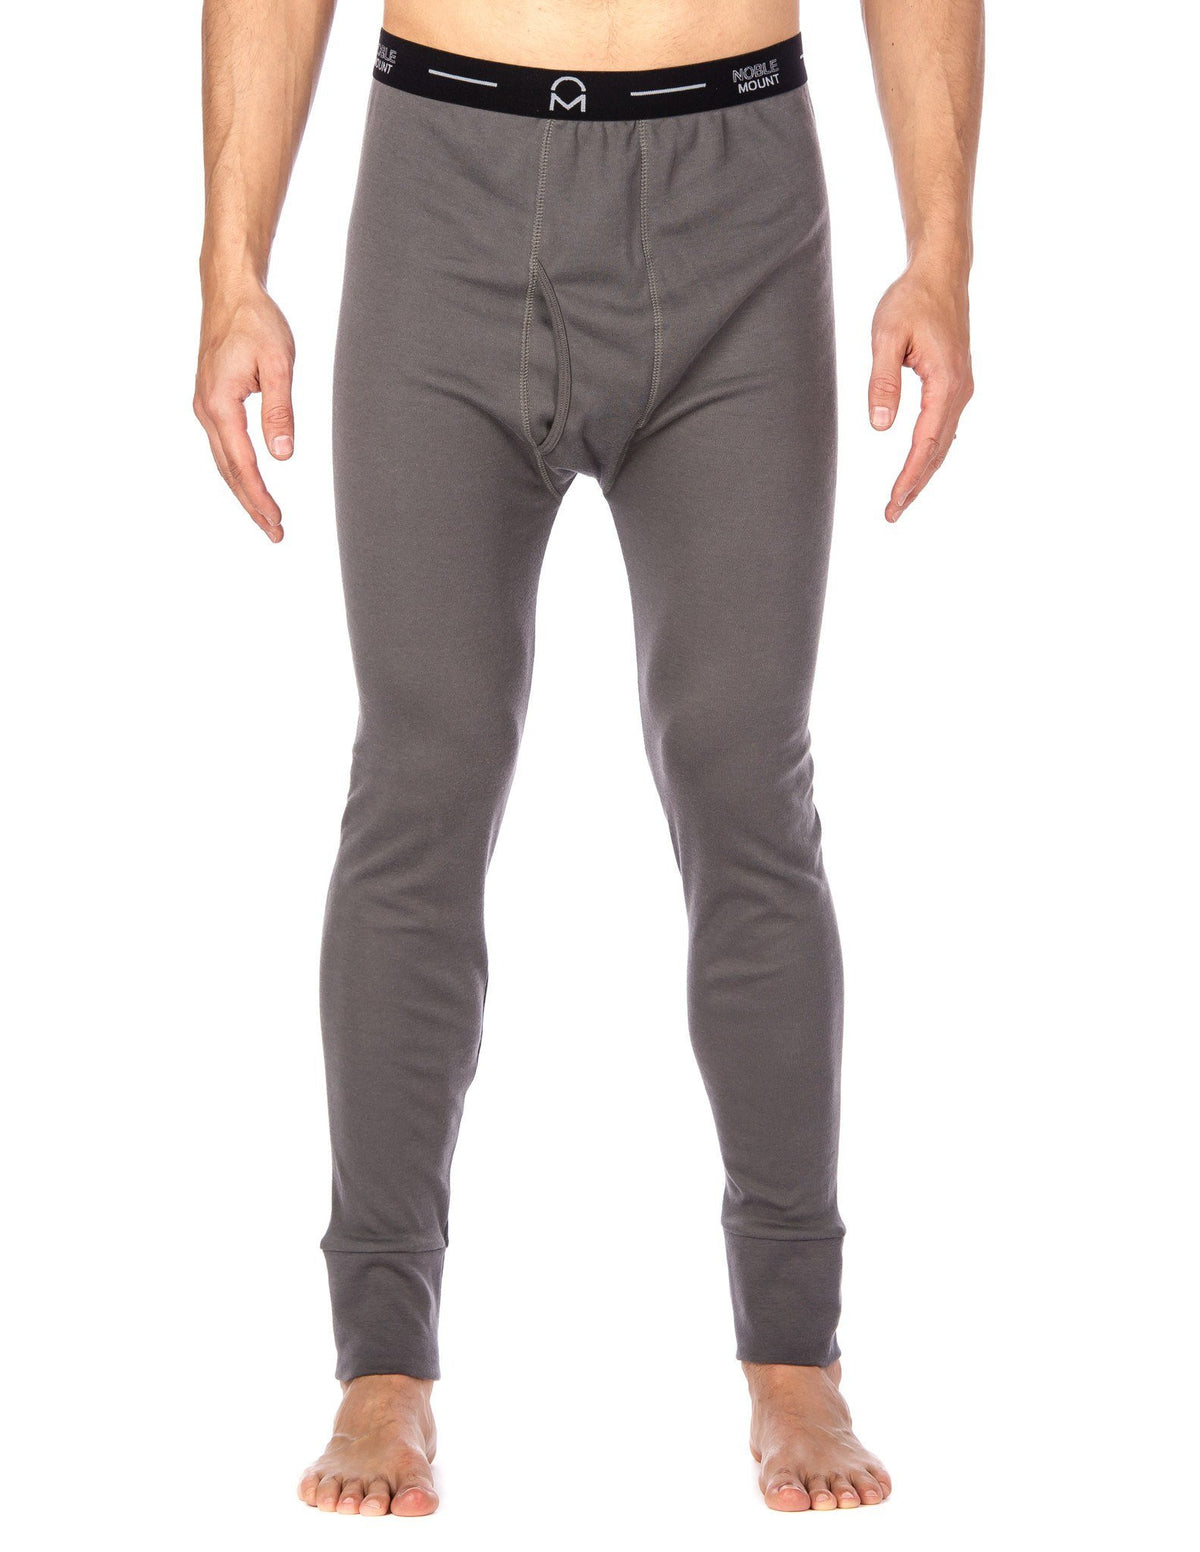 Men's 'Soft Comfort' Premium Thermal Long John Pants - Charcoal